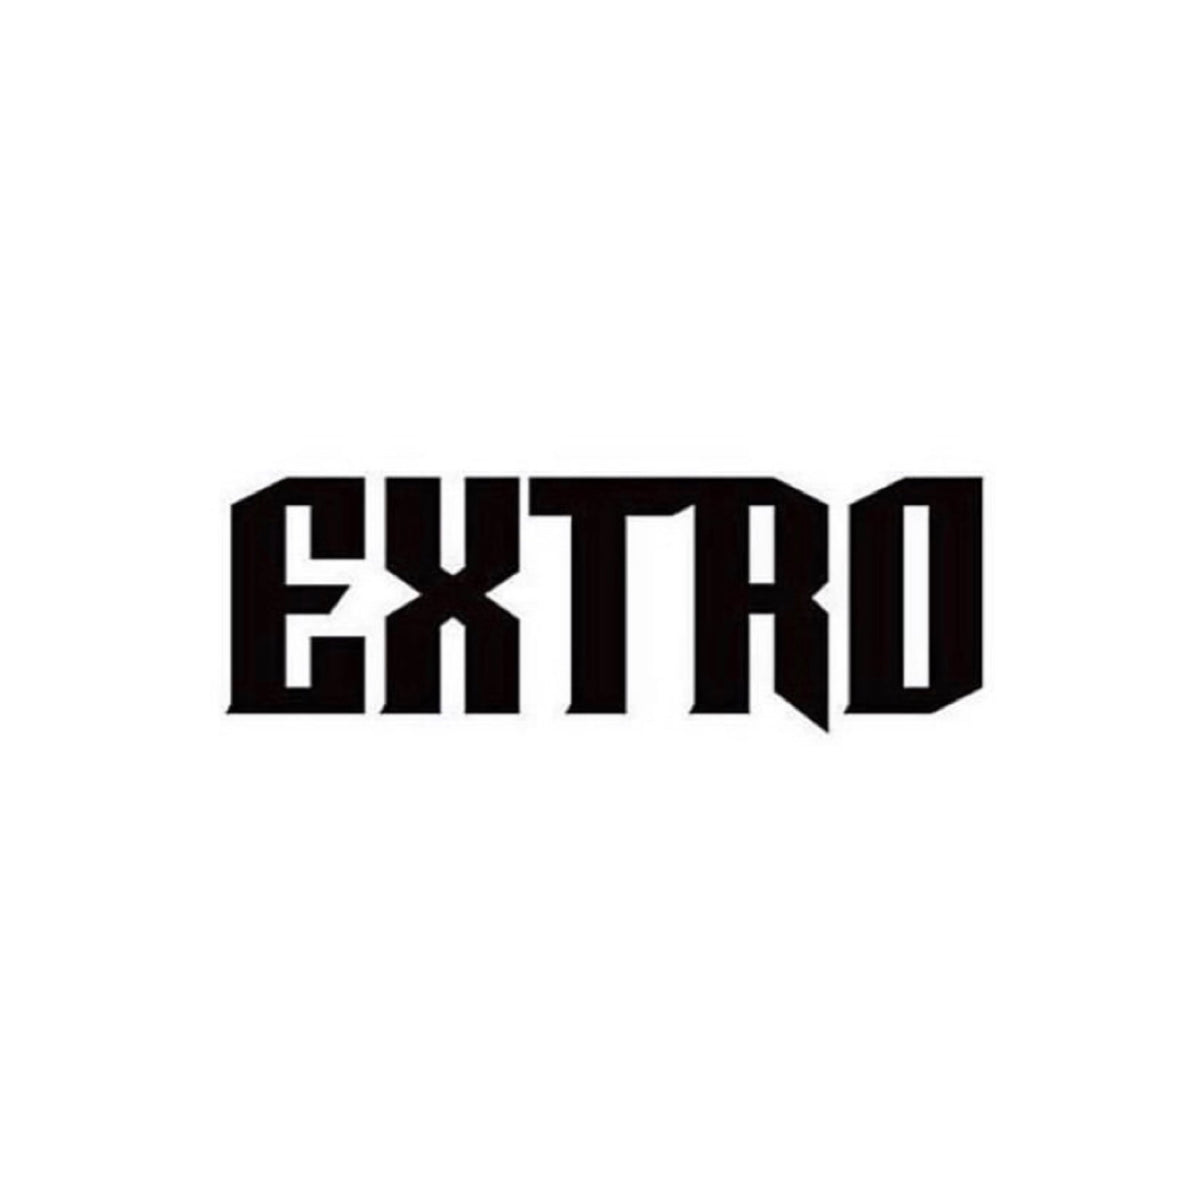 EXTRO – EXTRO